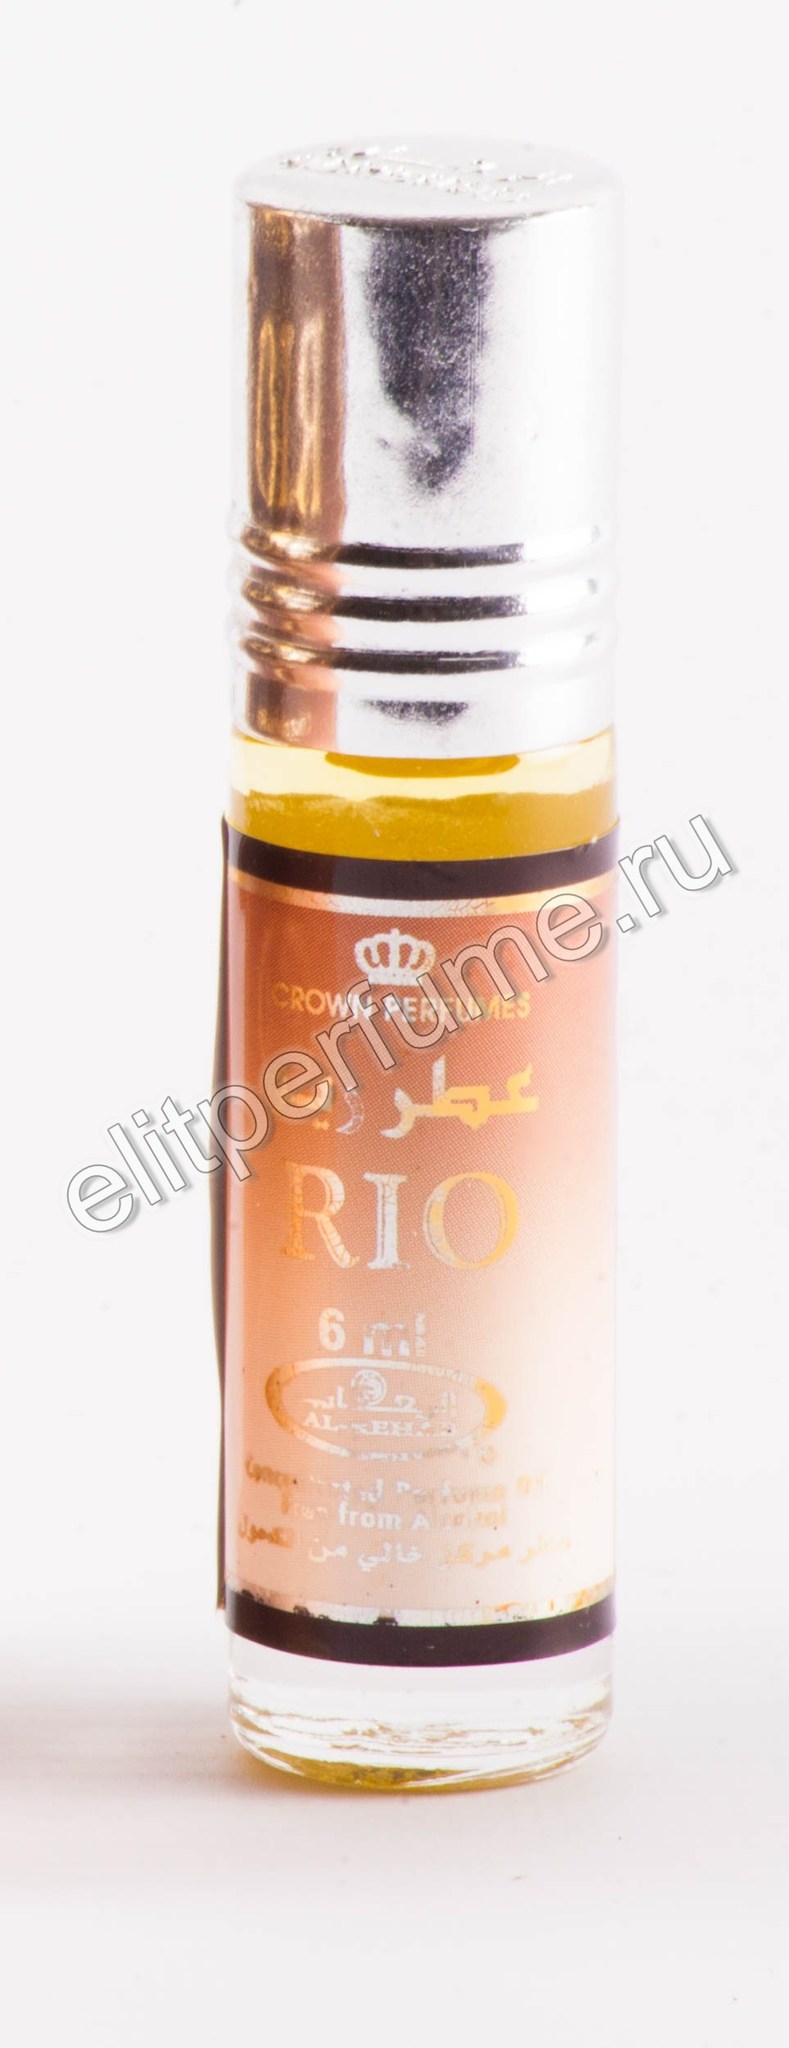 Rio Рио 6 мл арабские масляные духи от Аль Рехаб Al Rehab